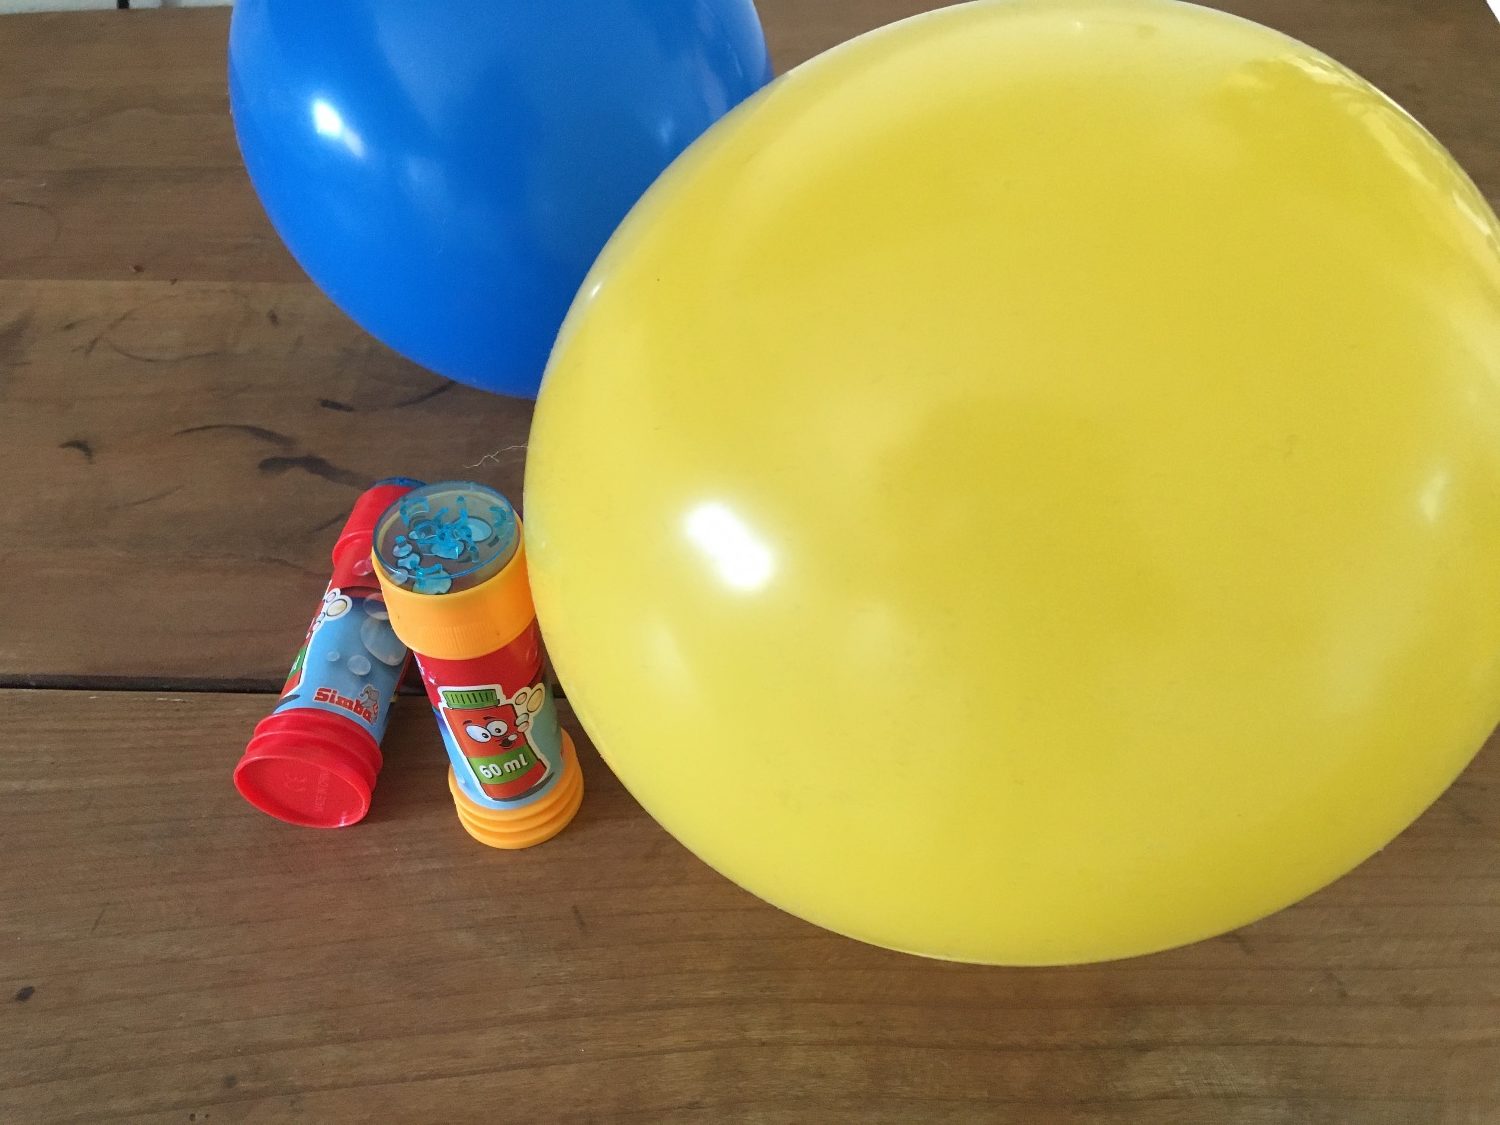 Titelbild zur Idee für die Beschäftigung mit Kindern '(119) Spiel mit Luftballons und Seifenblasen'